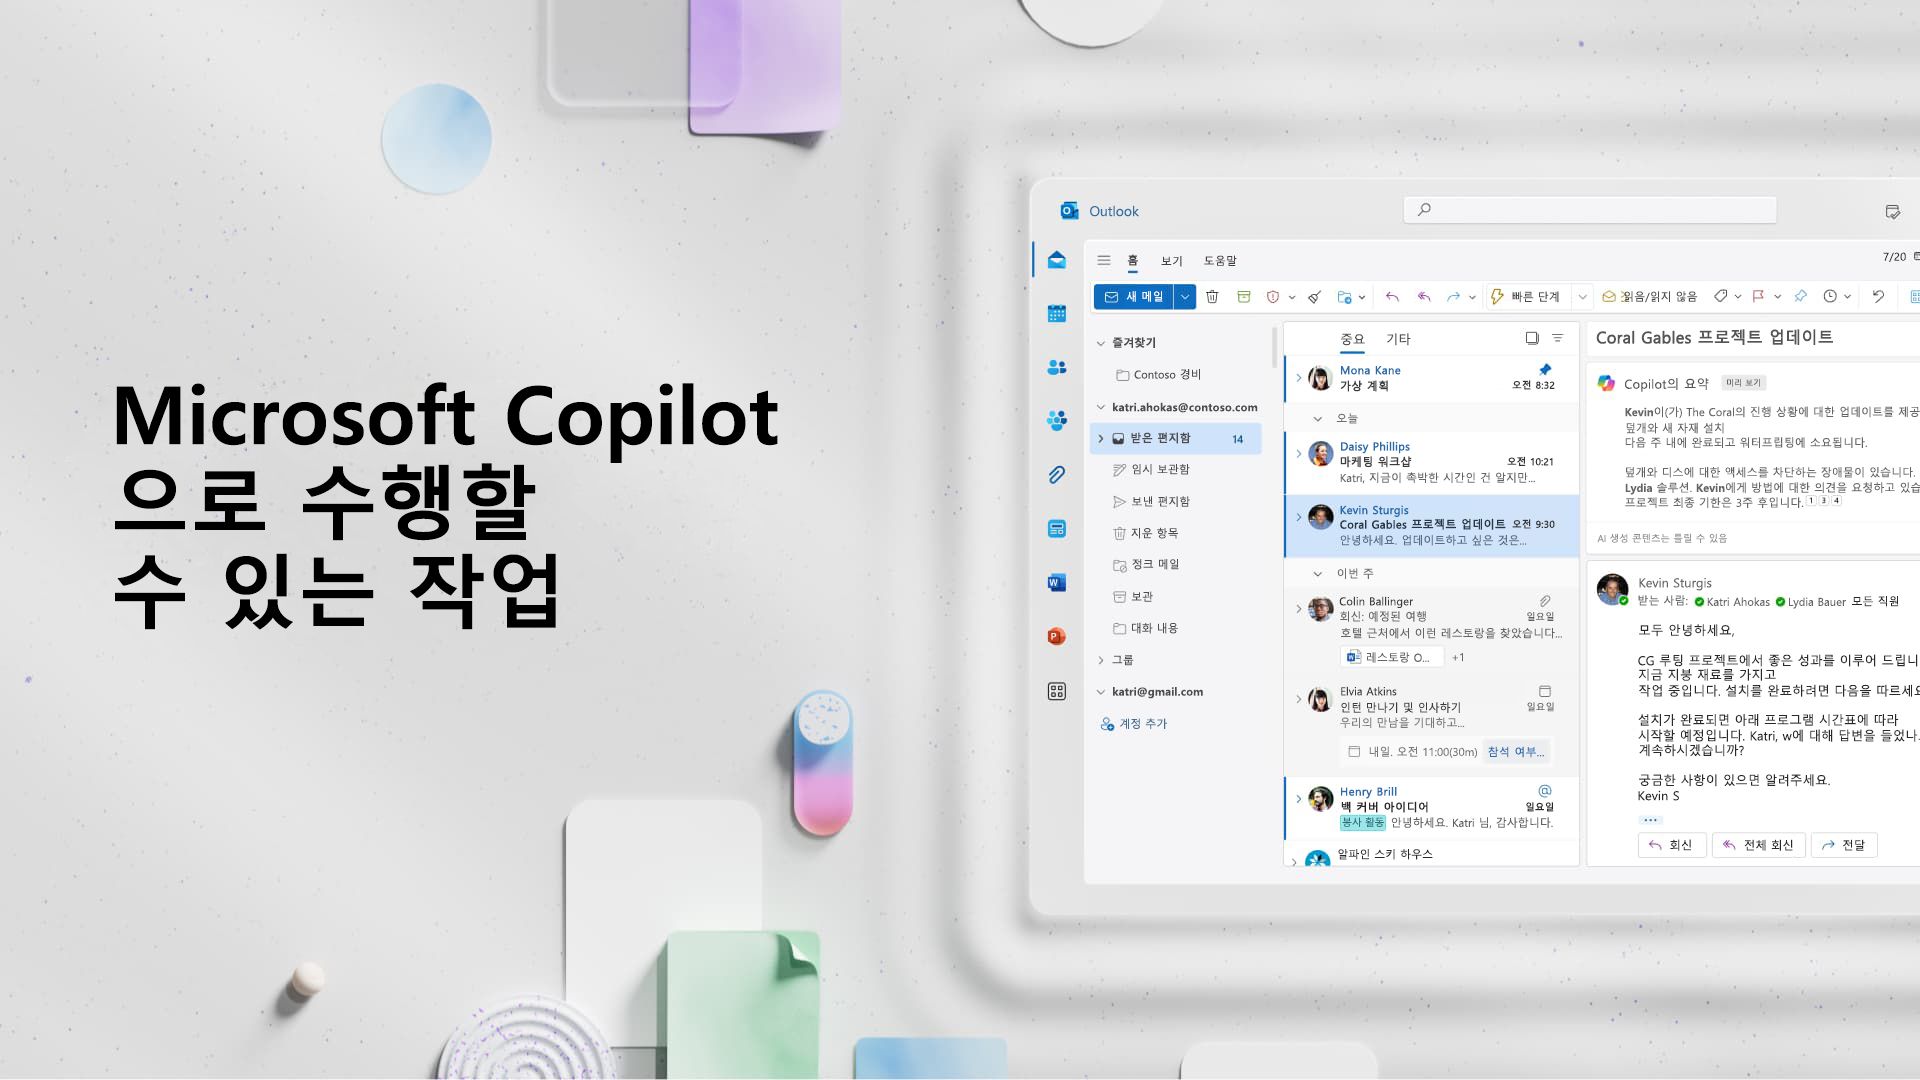 동영상: Microsoft Copilot으로 수행할 수 있는 작업